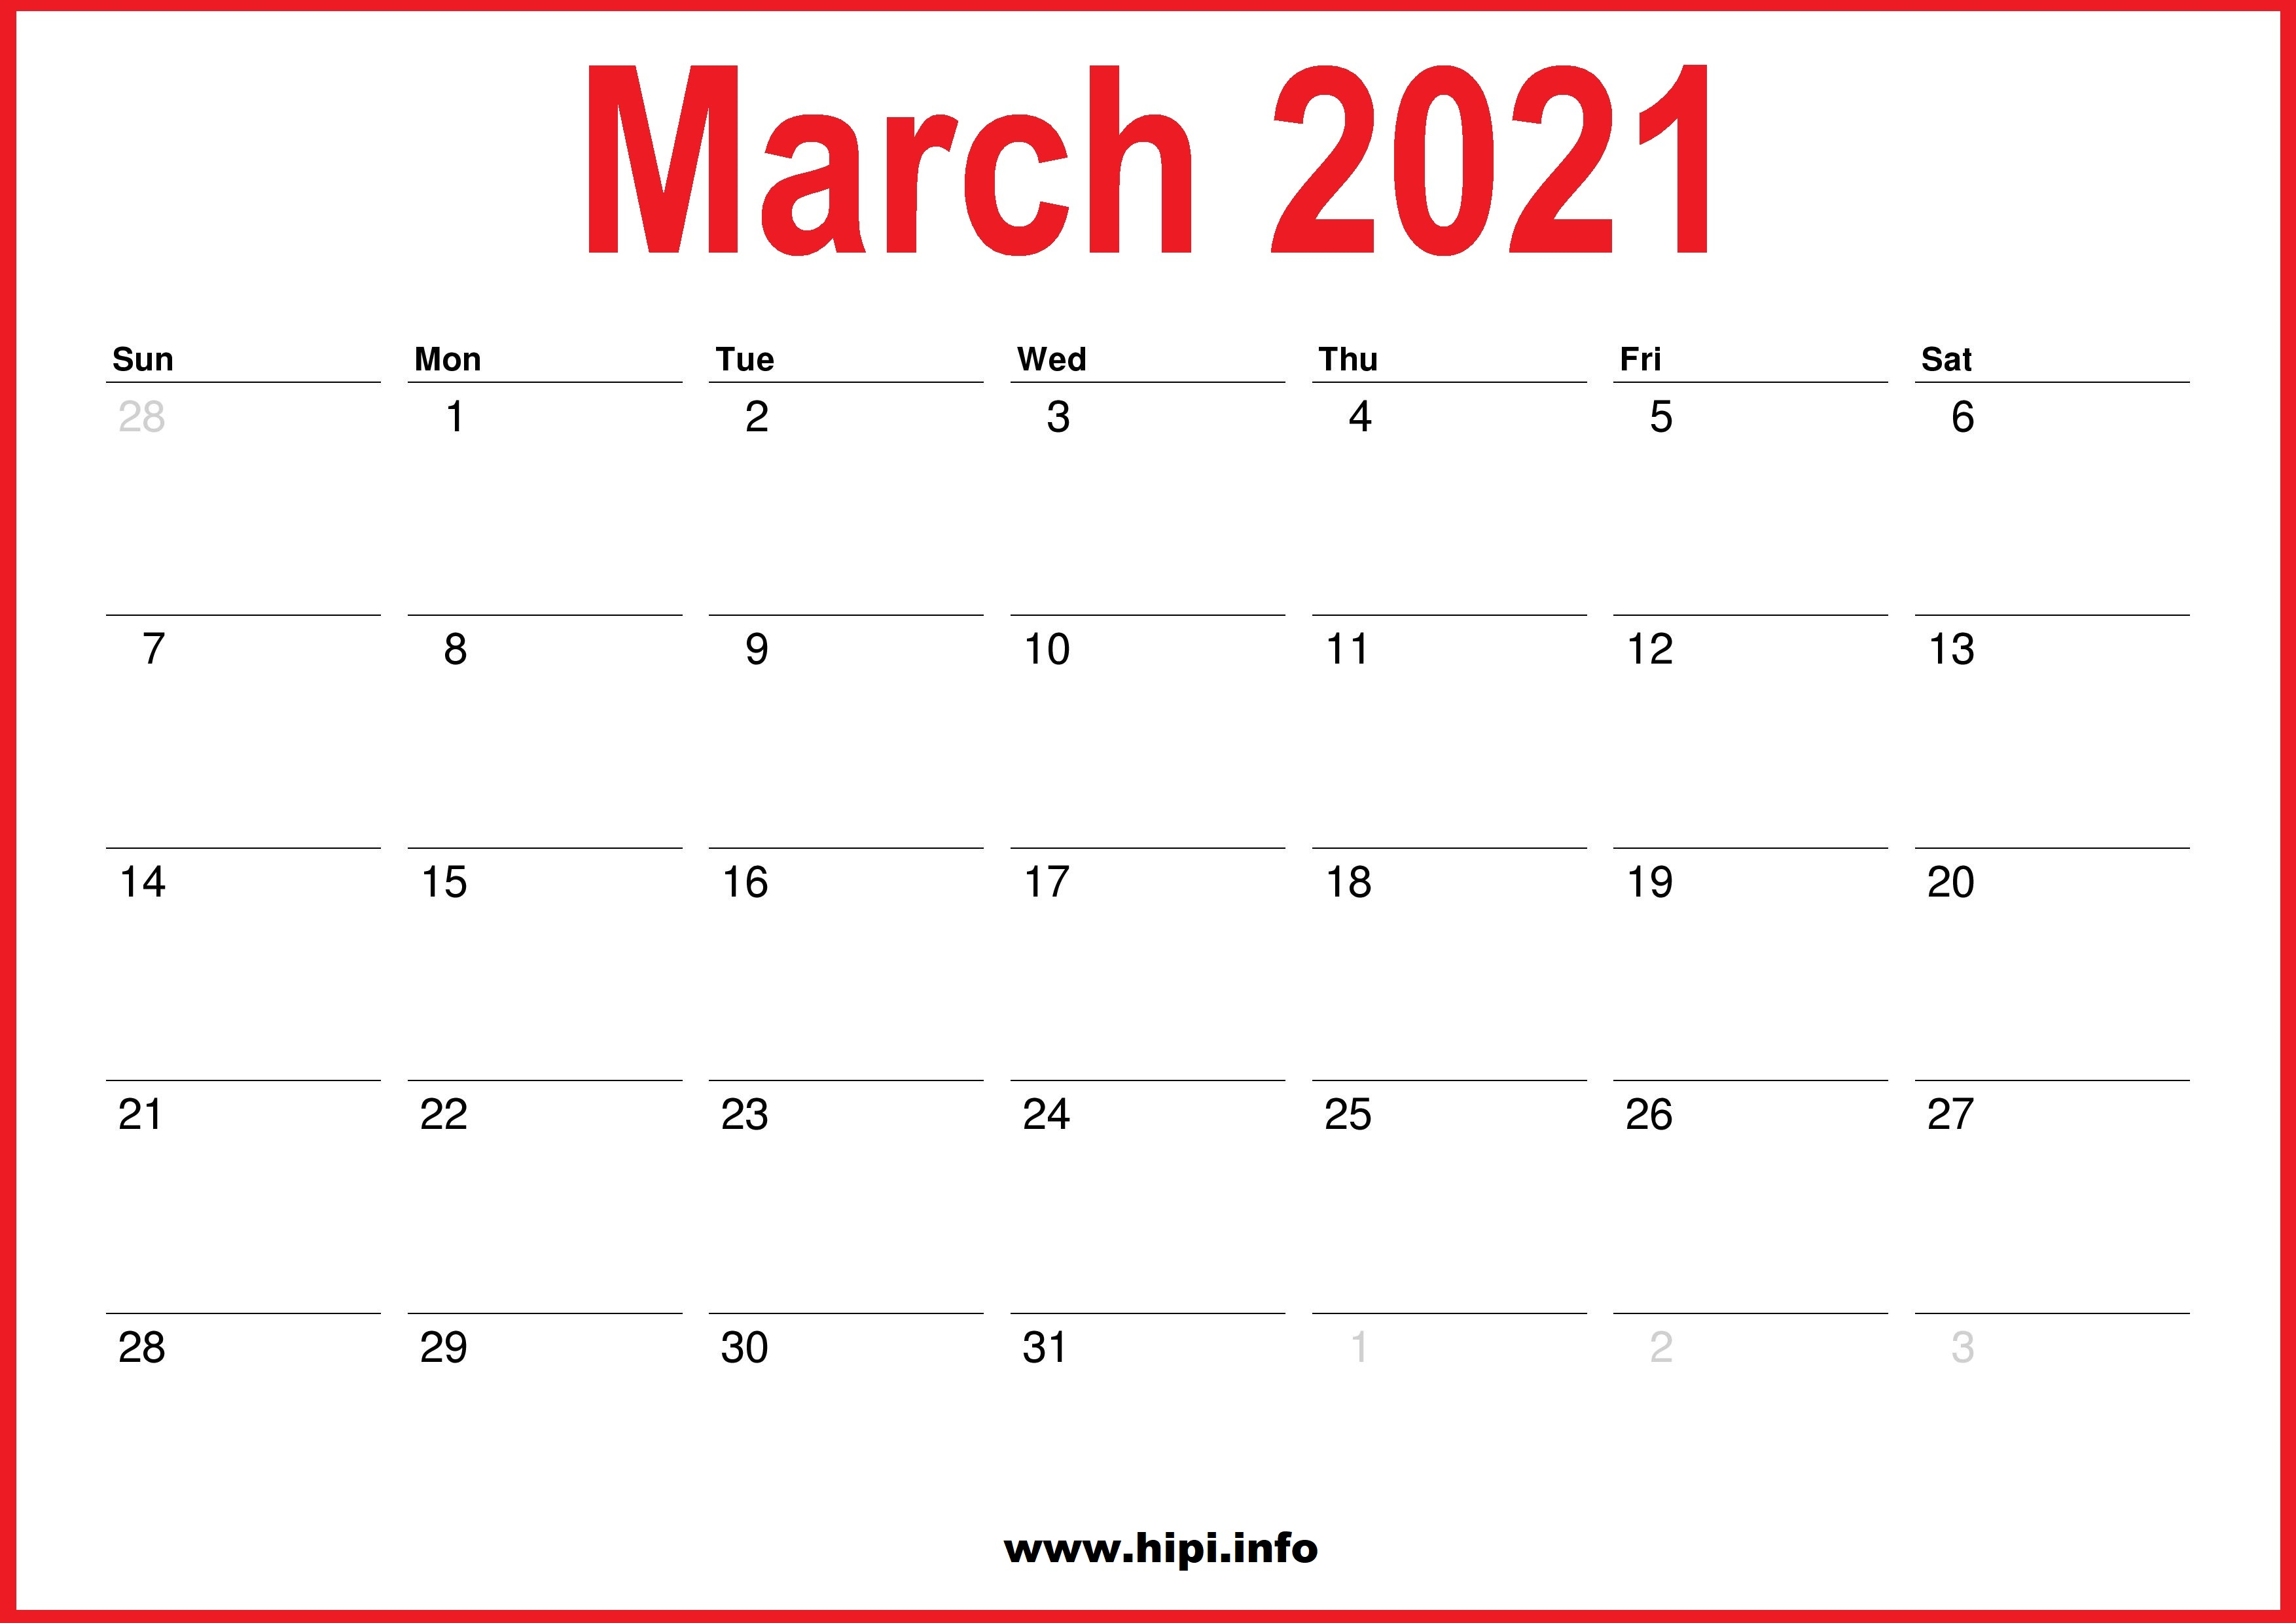 March Calendar Printable